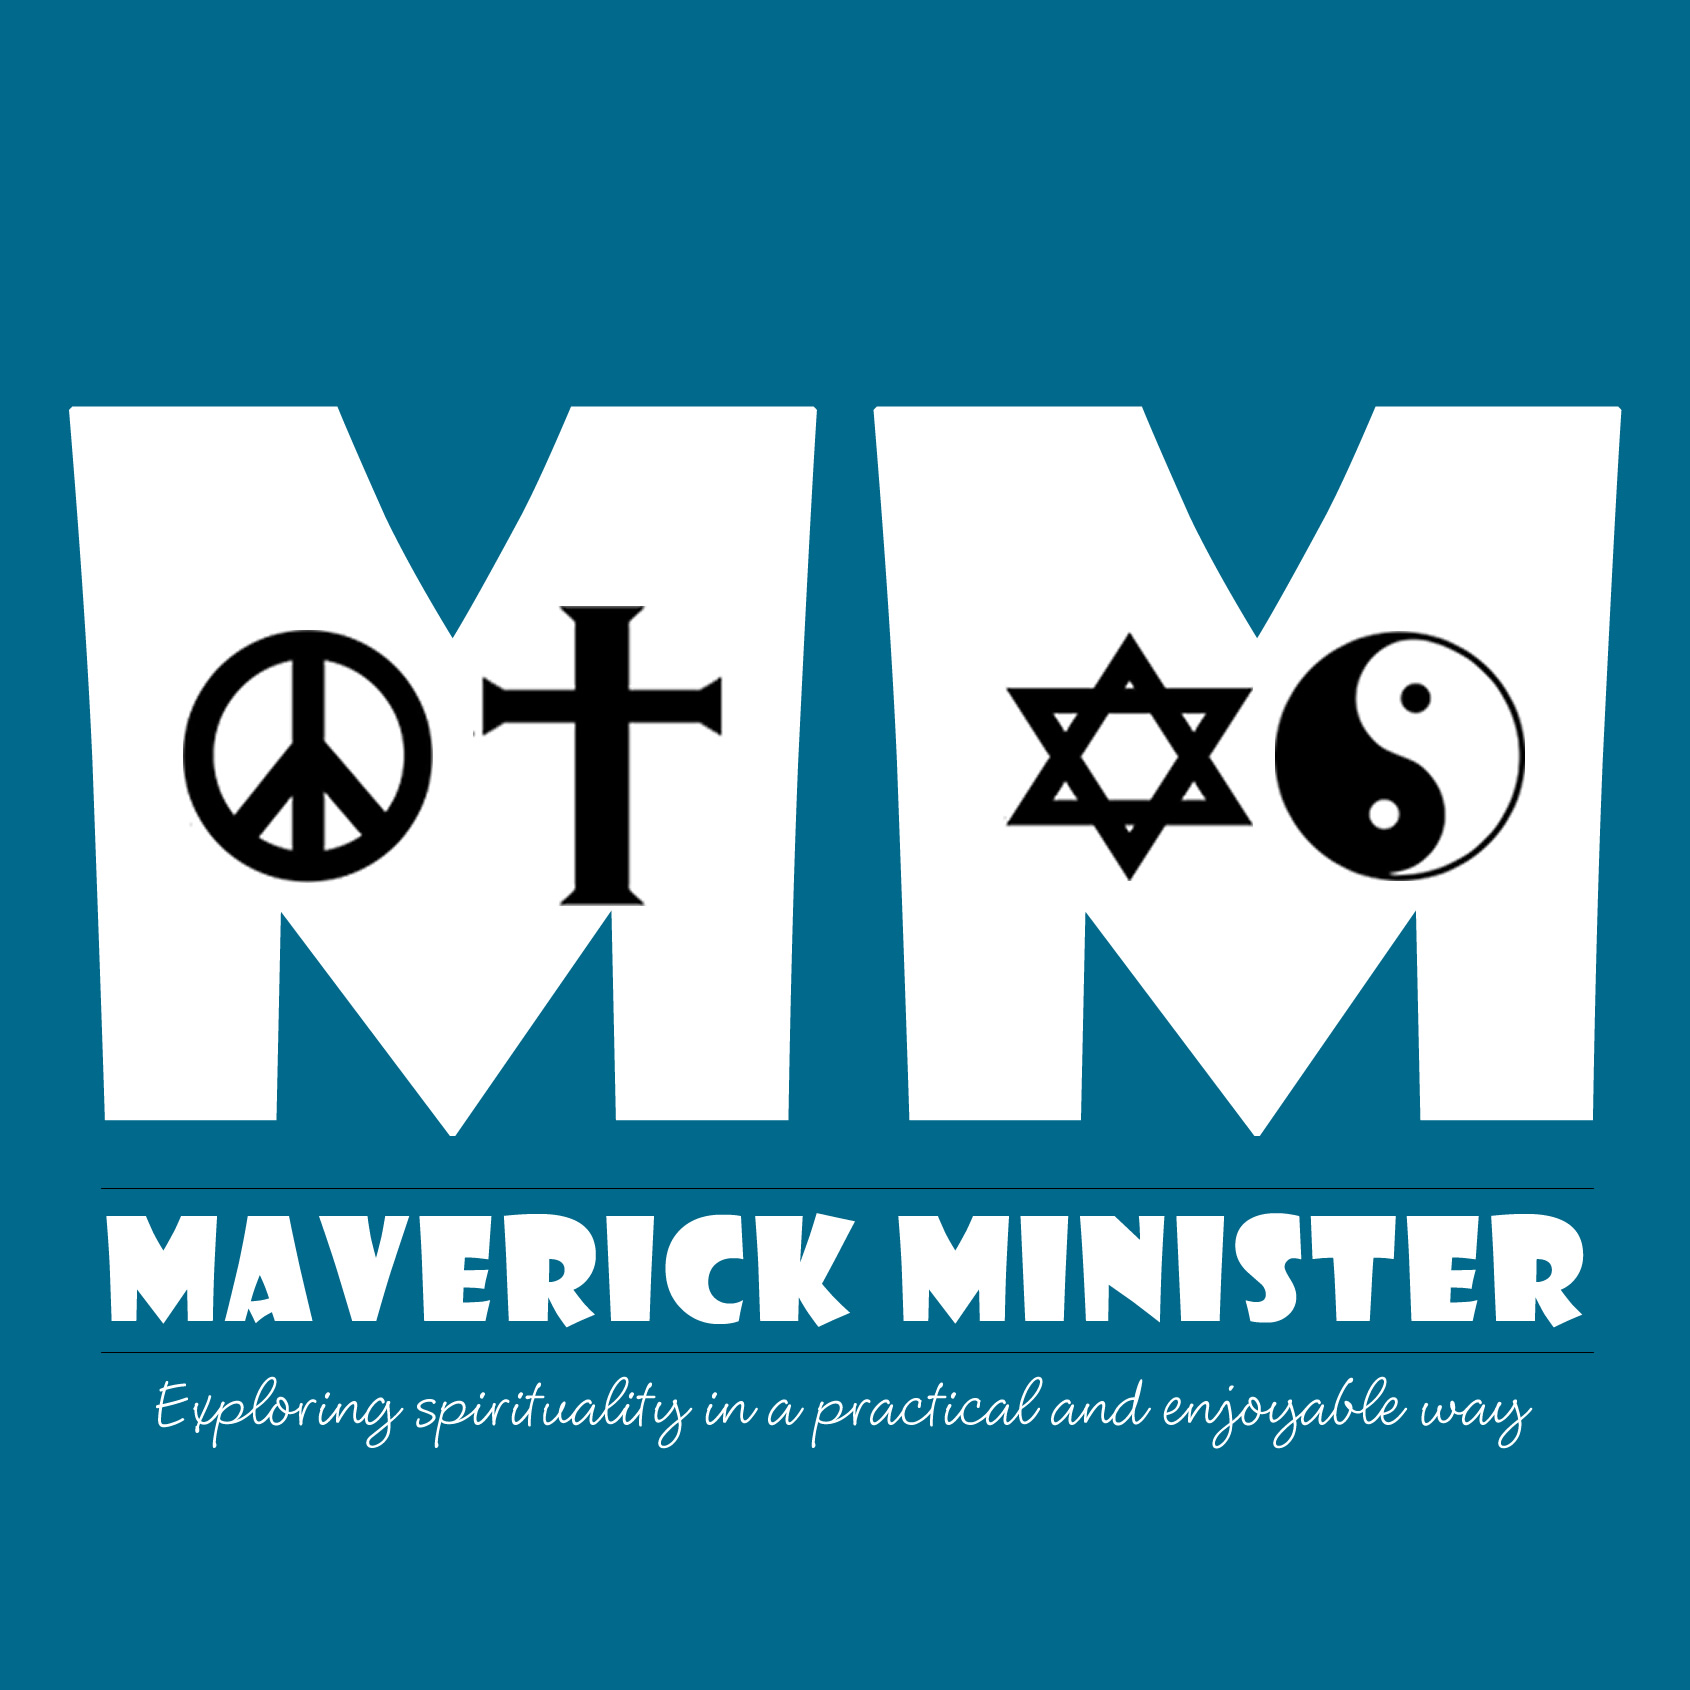 The Maverick Minister Podcasts